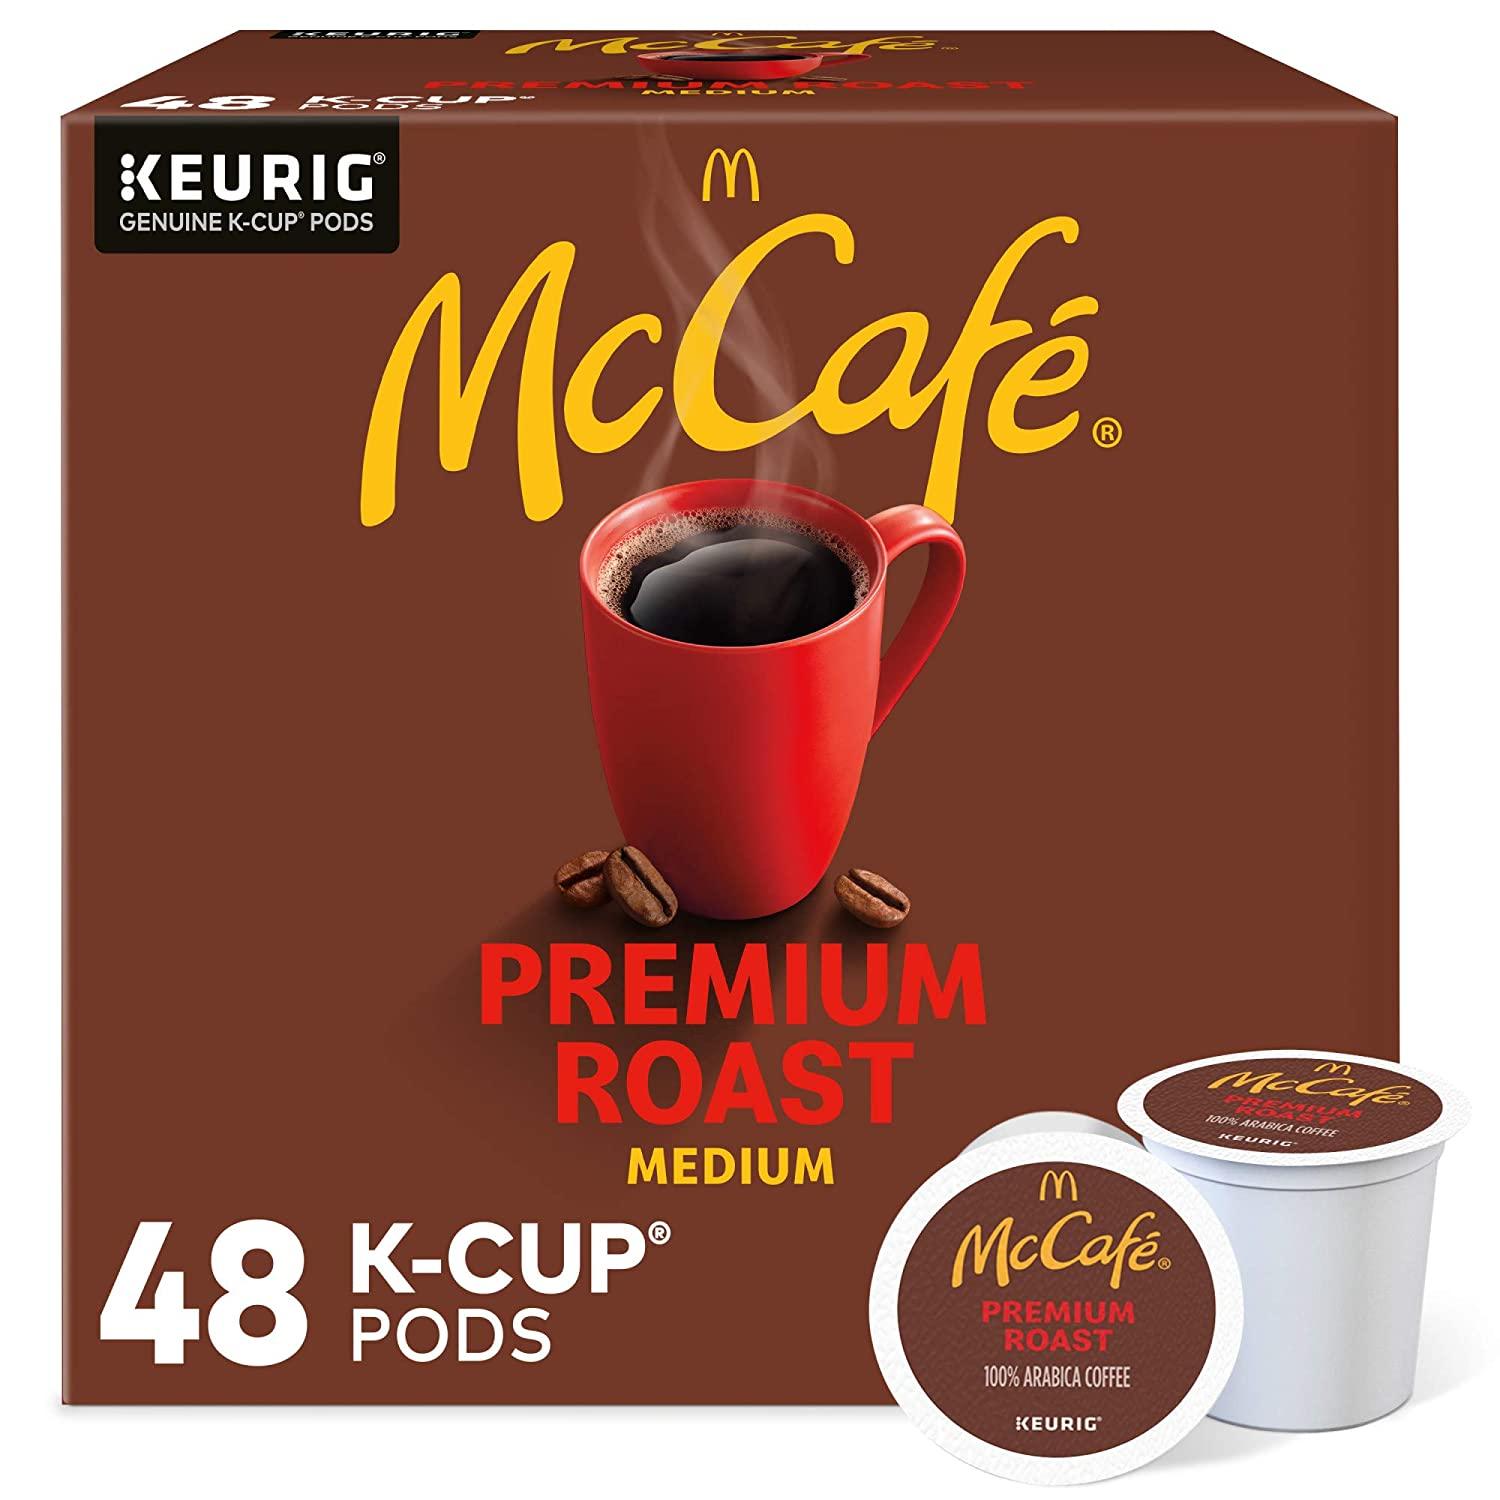 McCafe Keurig Premium Medium Roast Coffee Pods 48 Pack for $16.99